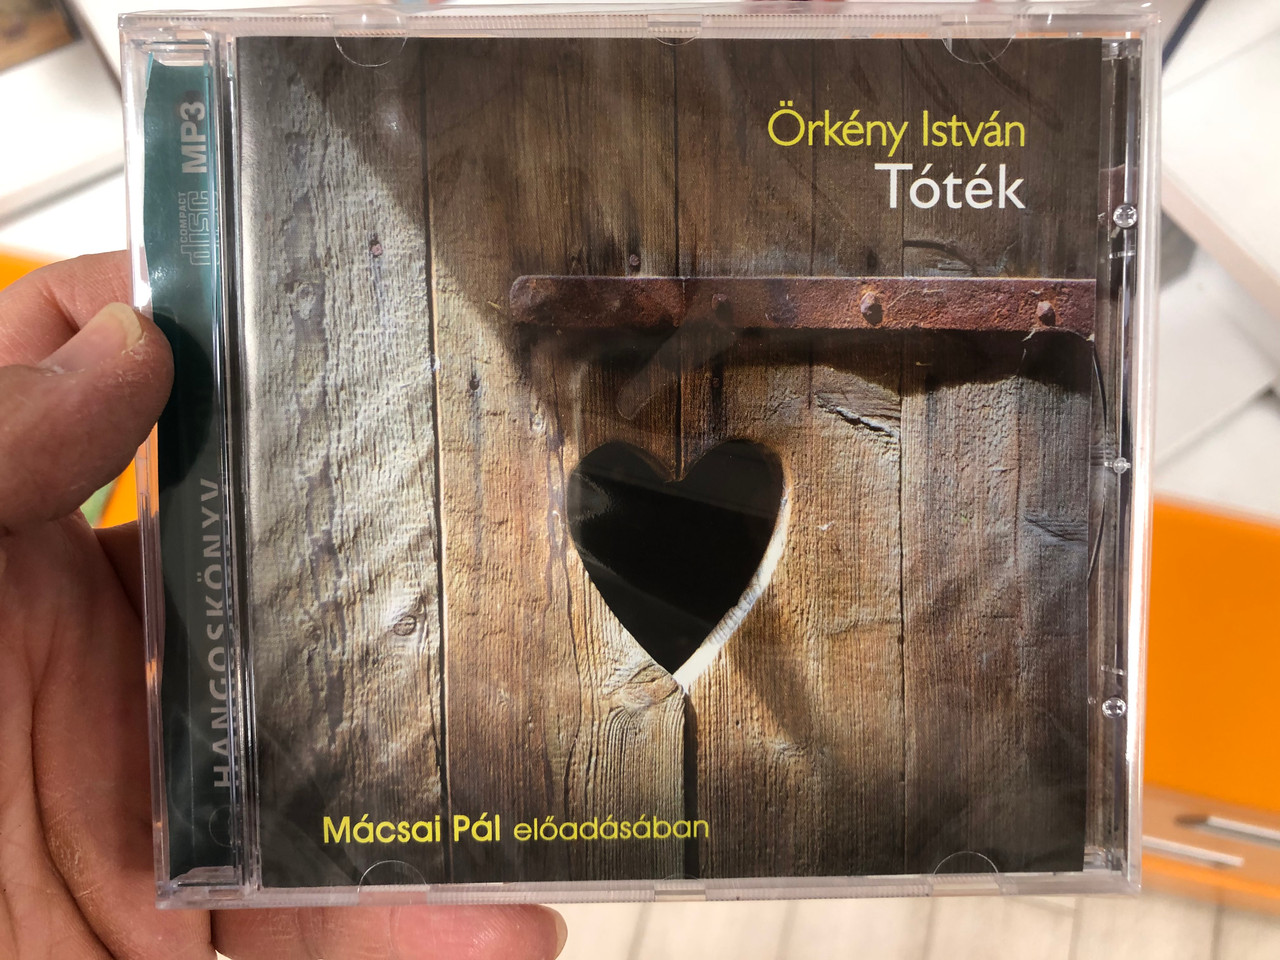 Tóték by Örkény István / Hungarian MP3 Audio Novel / Read by Mácsai Pál  előadásában / Kossuth-Mojzer kiadó 2019 - Bible in My Language